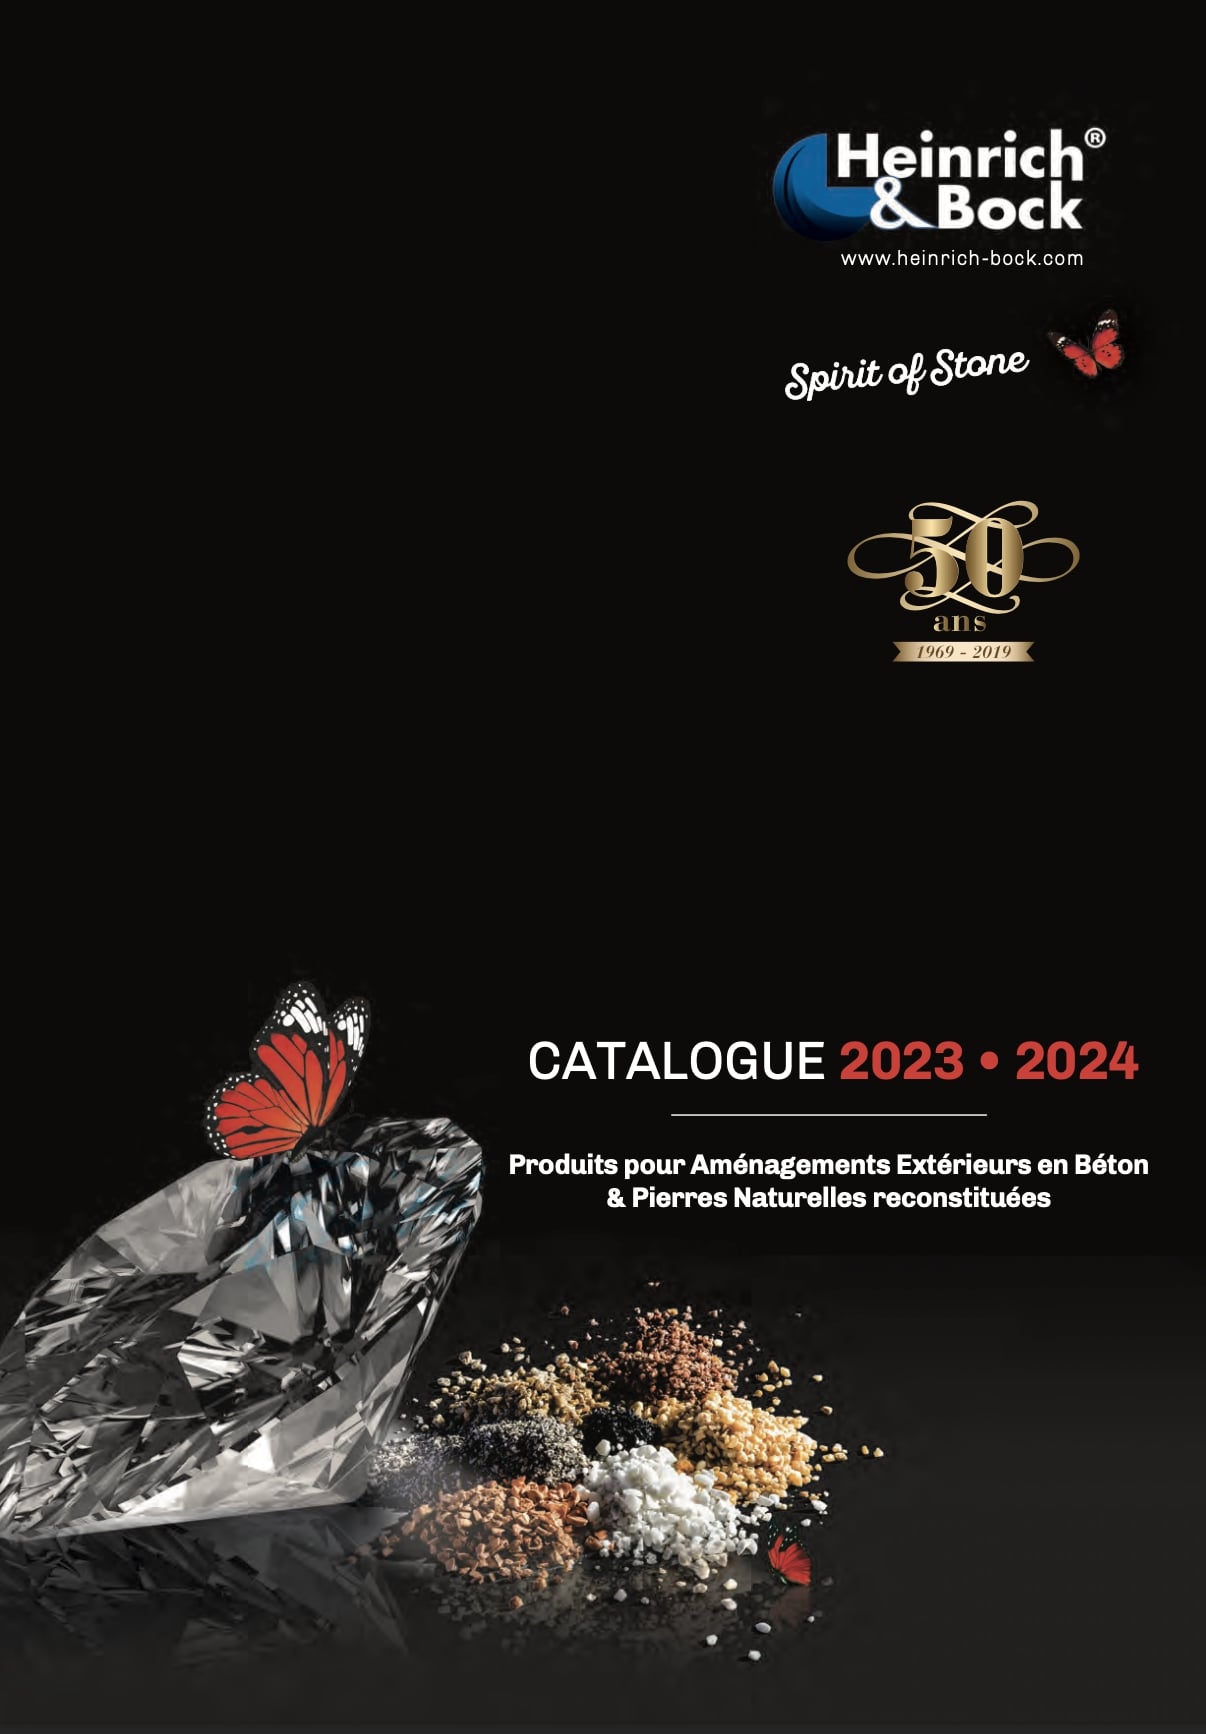 Catalogue 2023